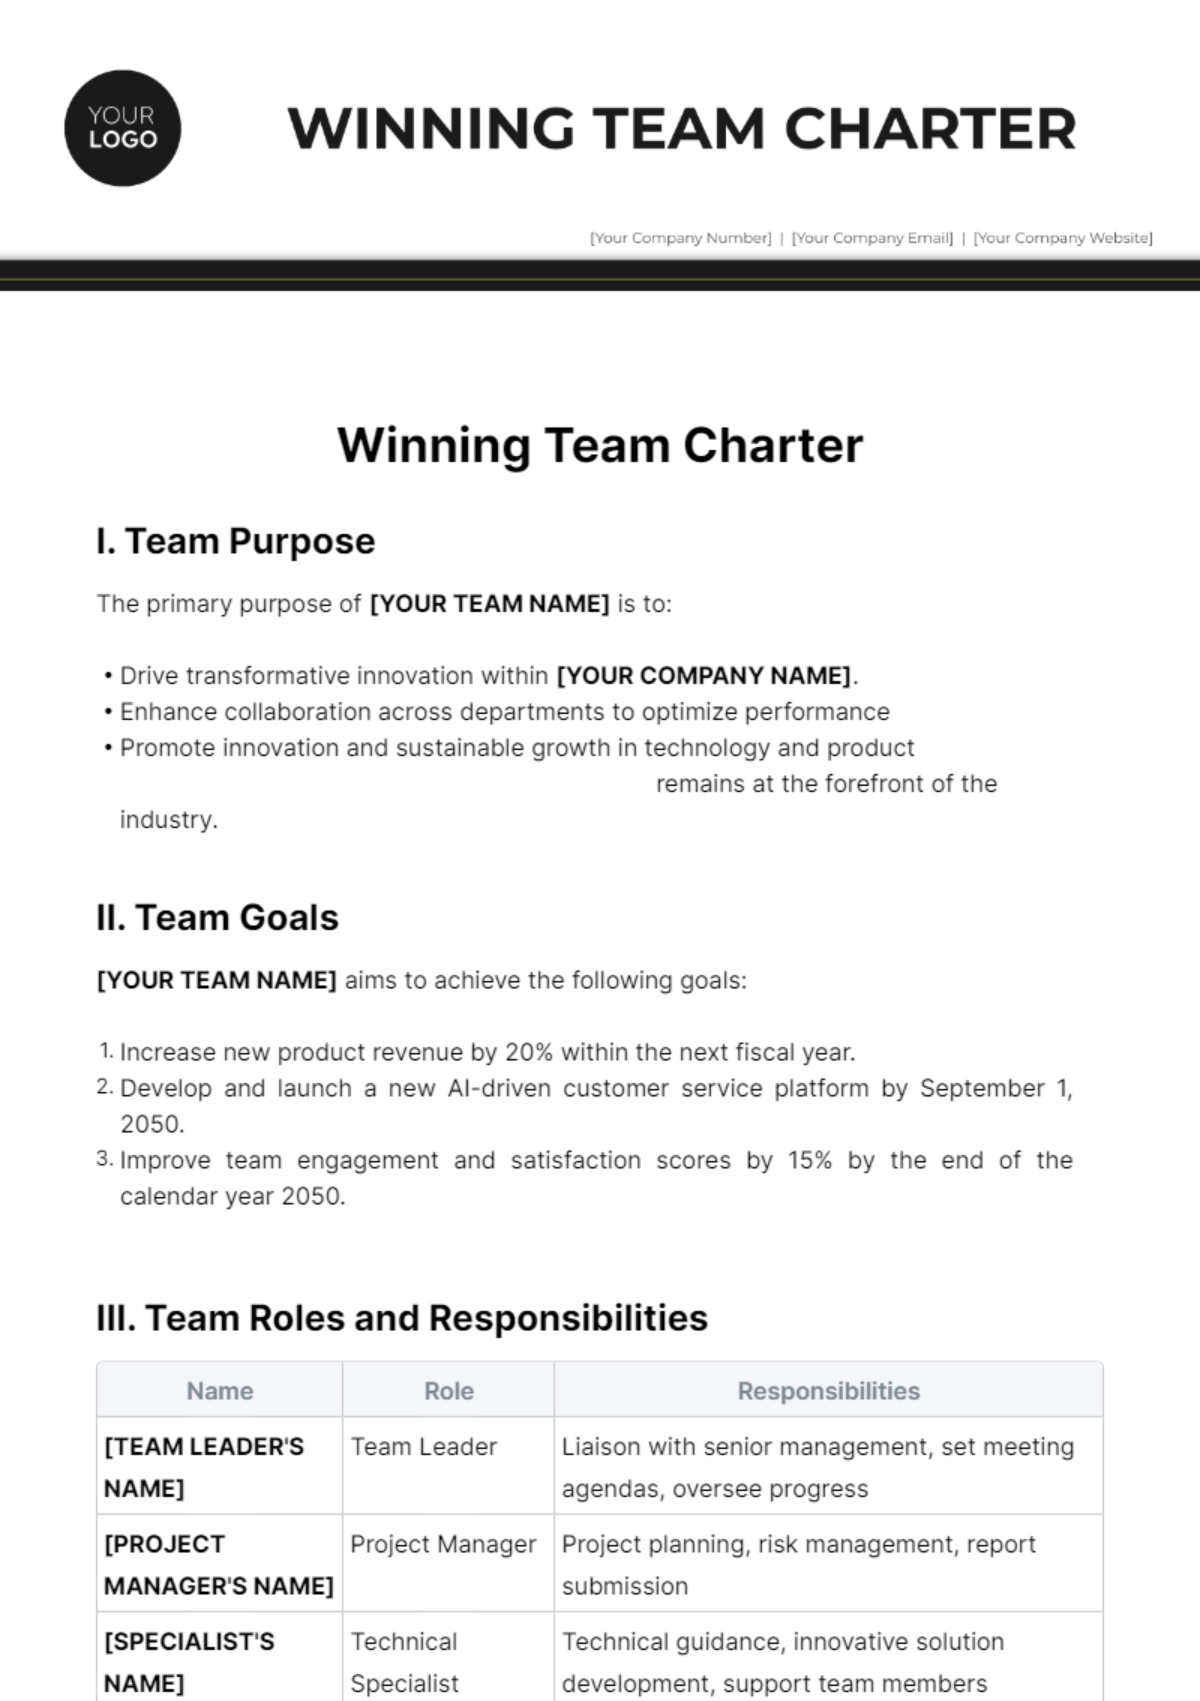 Winning Team Charter Template